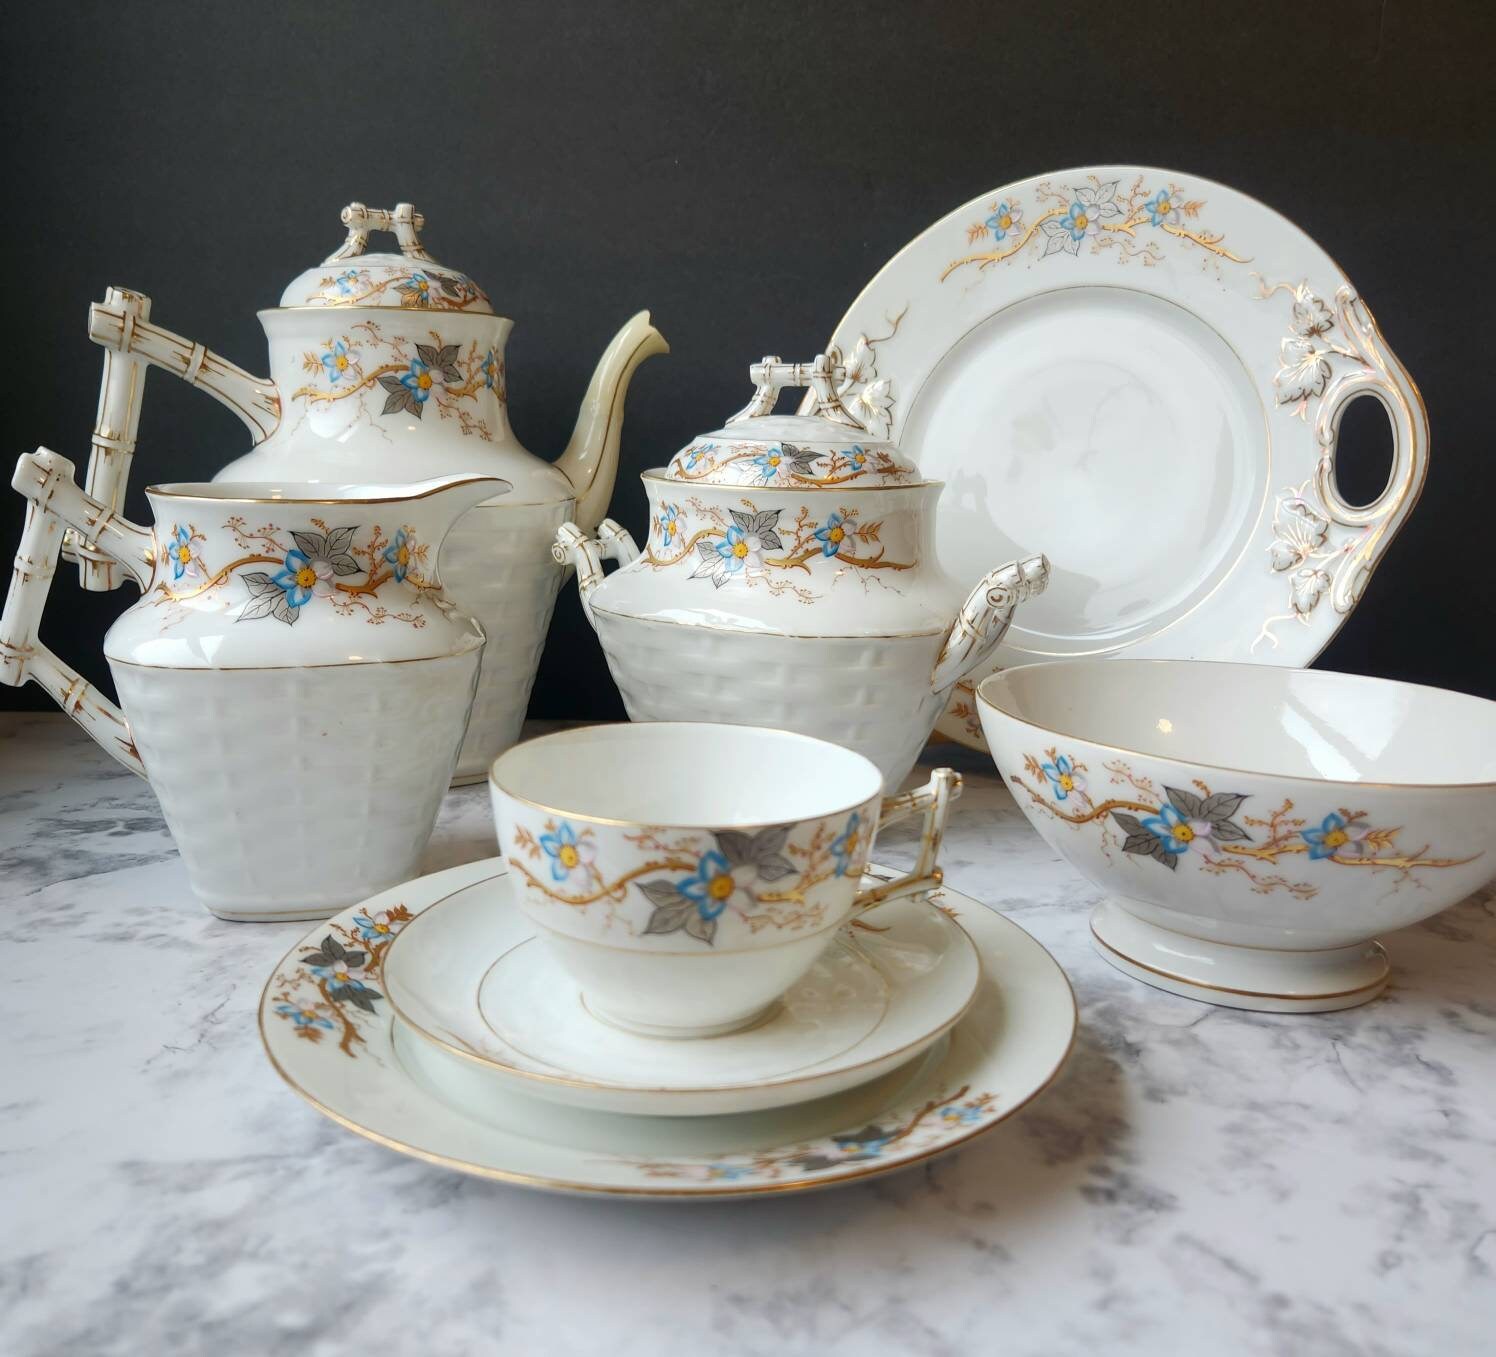 Valfre Bruno Ceramic Tea Set